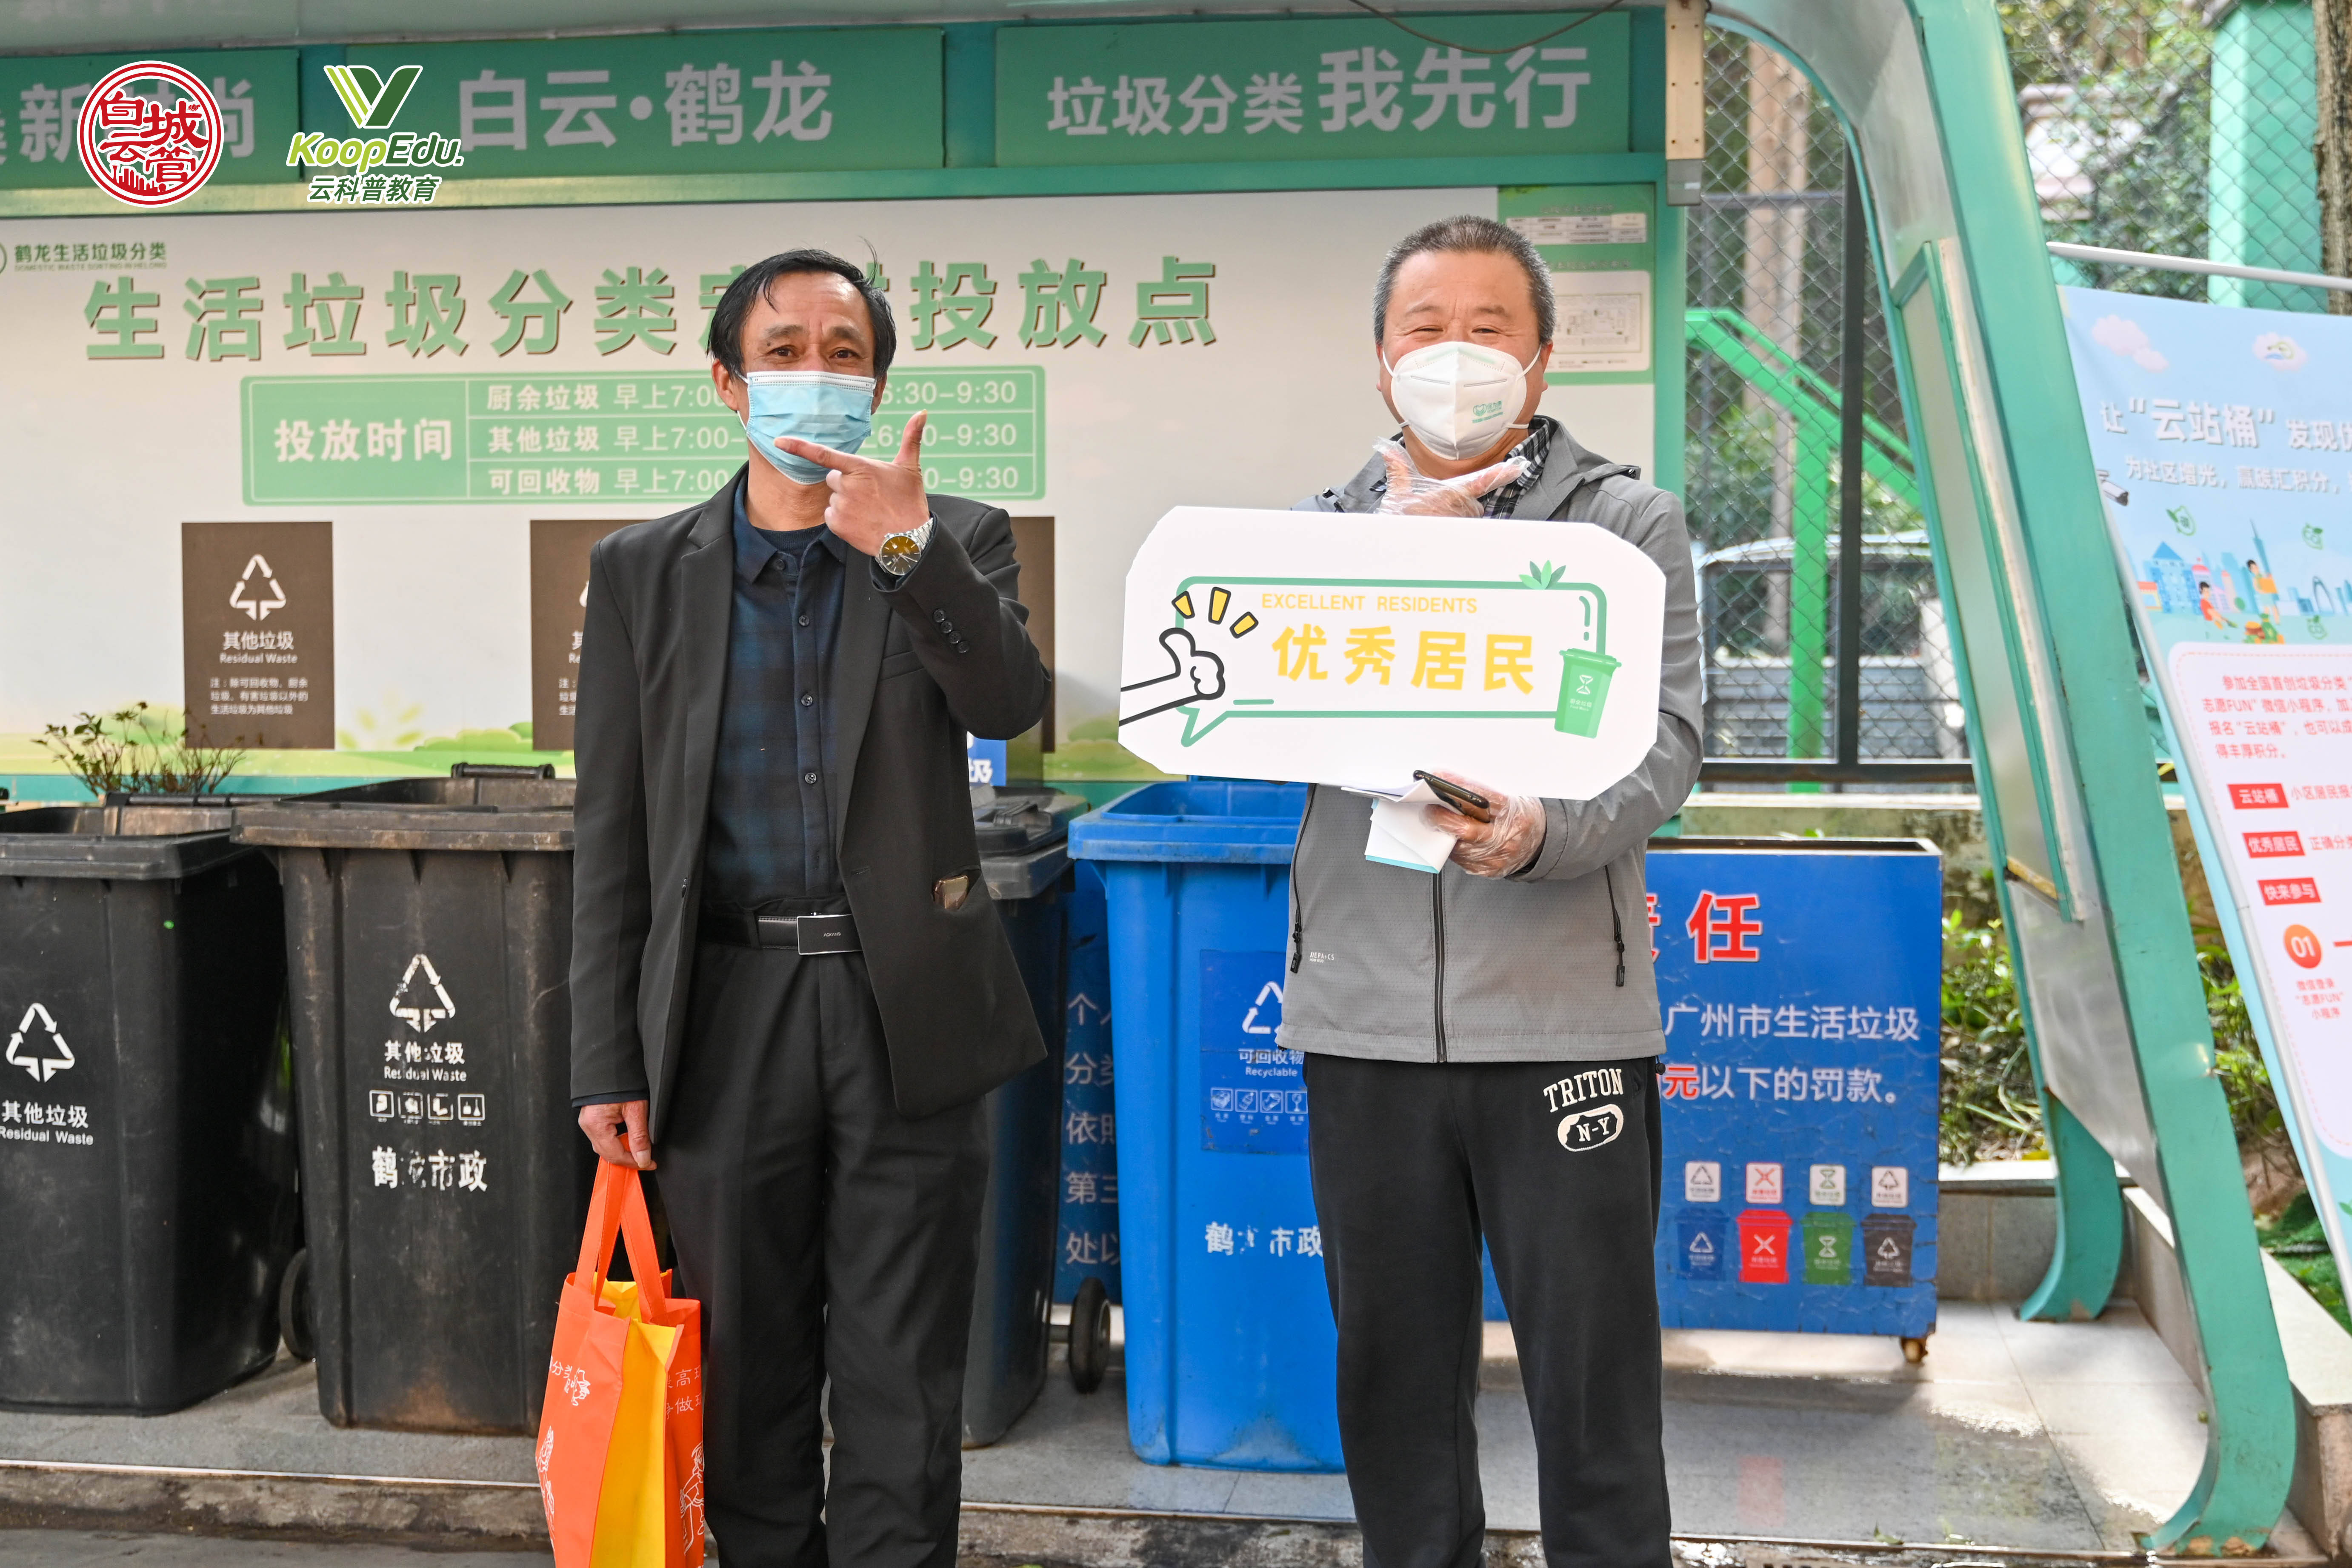 广州市白云区在全国首创“云站桶” 寻找垃圾分类“优秀居民”